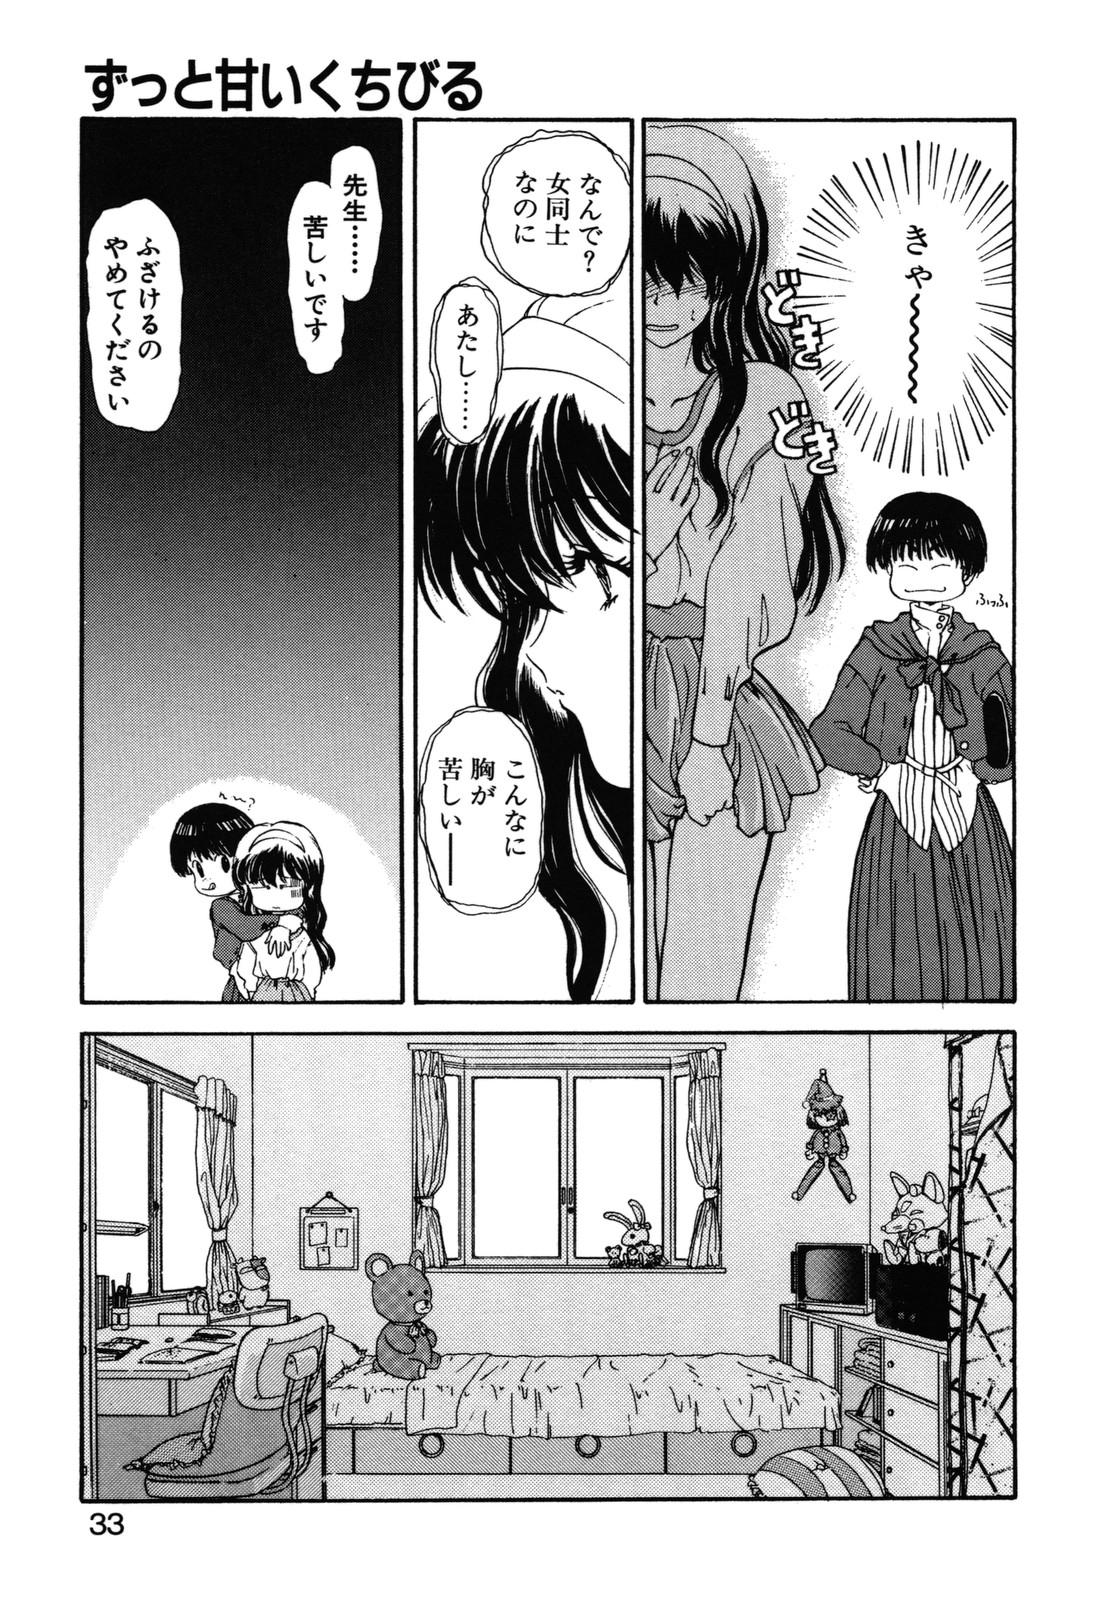 [Utatane Hiroyuki] COUNT DOWN page 34 full